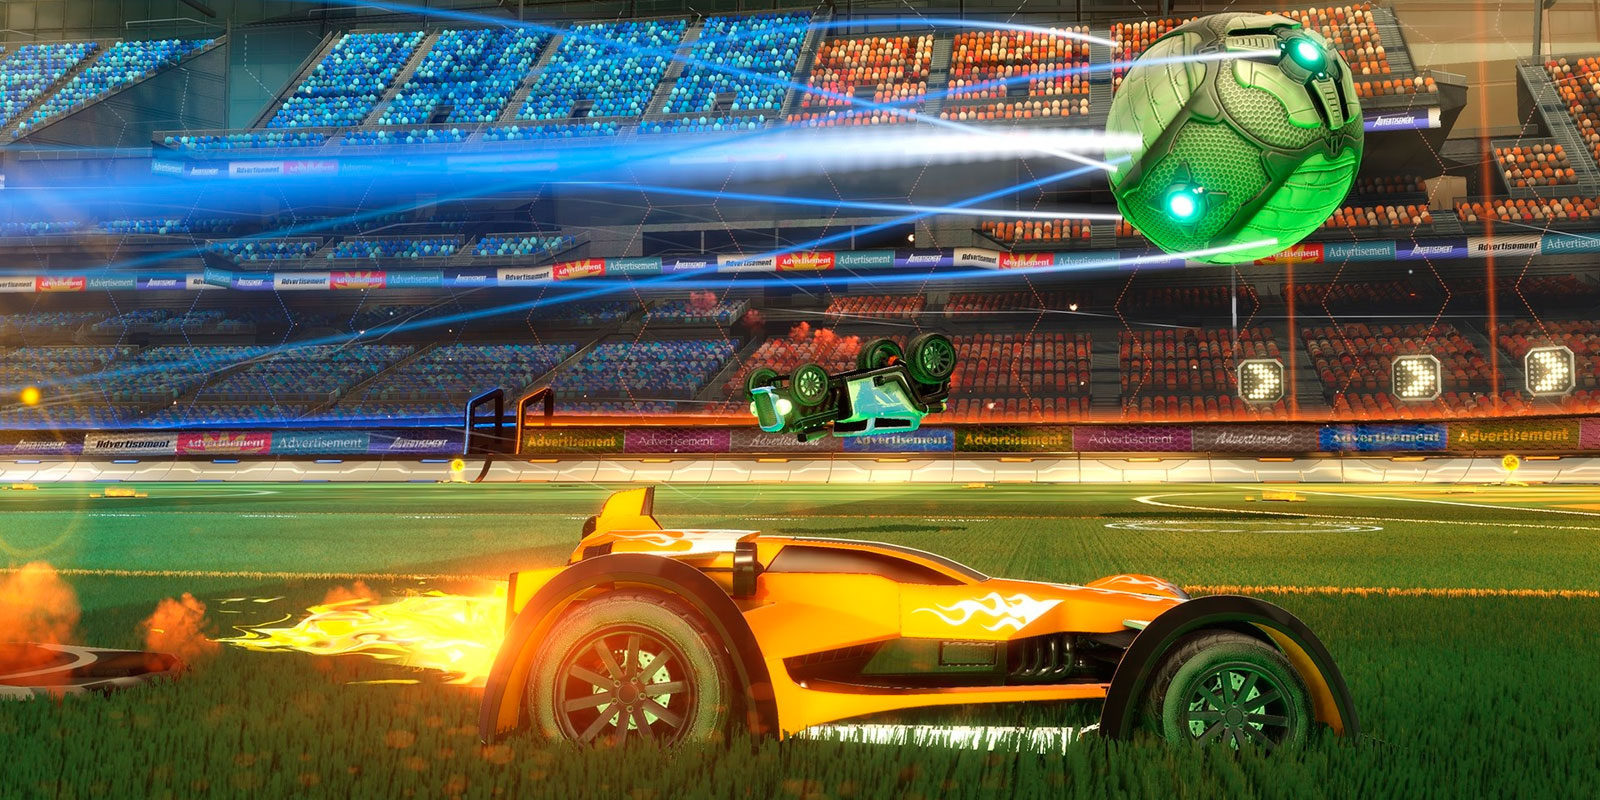 Juega gratis a 'Rocket League' y en Xbox Live este fin de semana